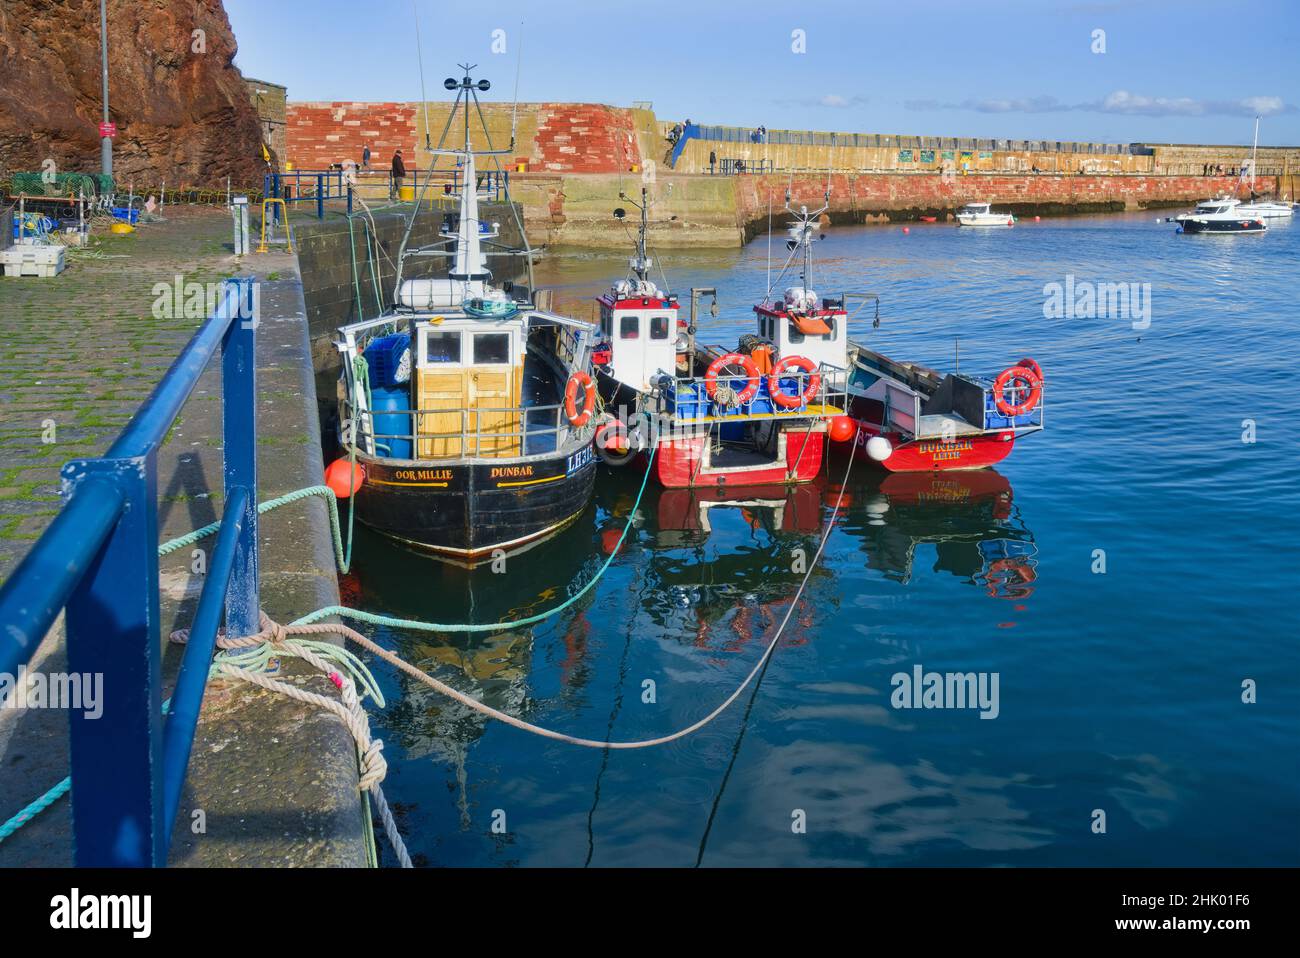 Si affaccia sul porto di Dunbar. Bella giornata limpida. Barche colorate da pesca. Imbarcazioni da diporto. Estuario Forth. Lothian orientale, Scozia. REGNO UNITO Foto Stock